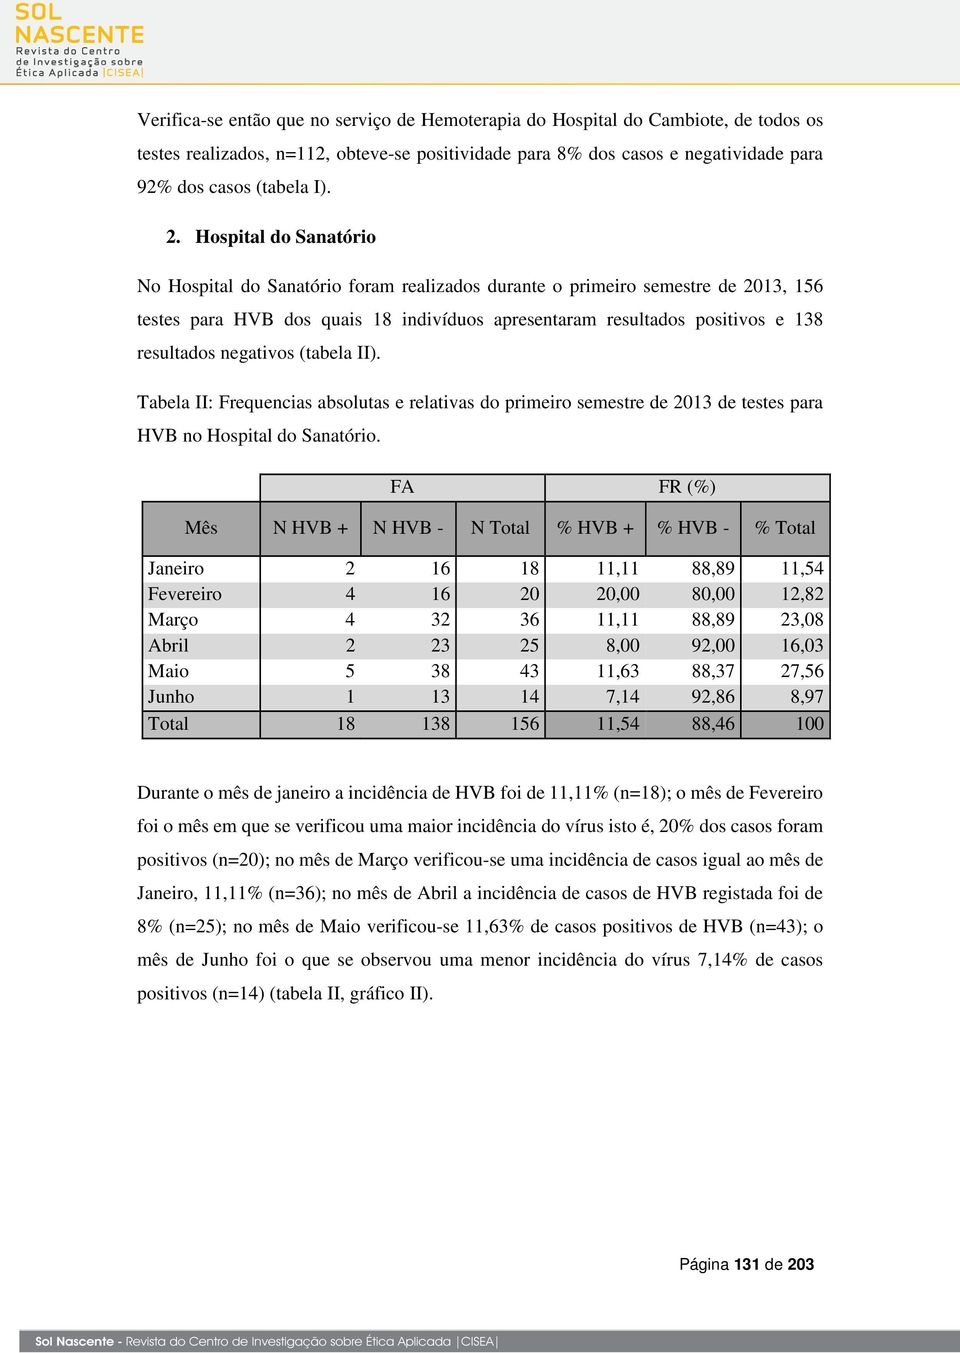 negativos (tabela II). Tabela II: Frequencias absolutas e relativas do primeiro semestre de 2013 de testes para HVB no Hospital do Sanatório.